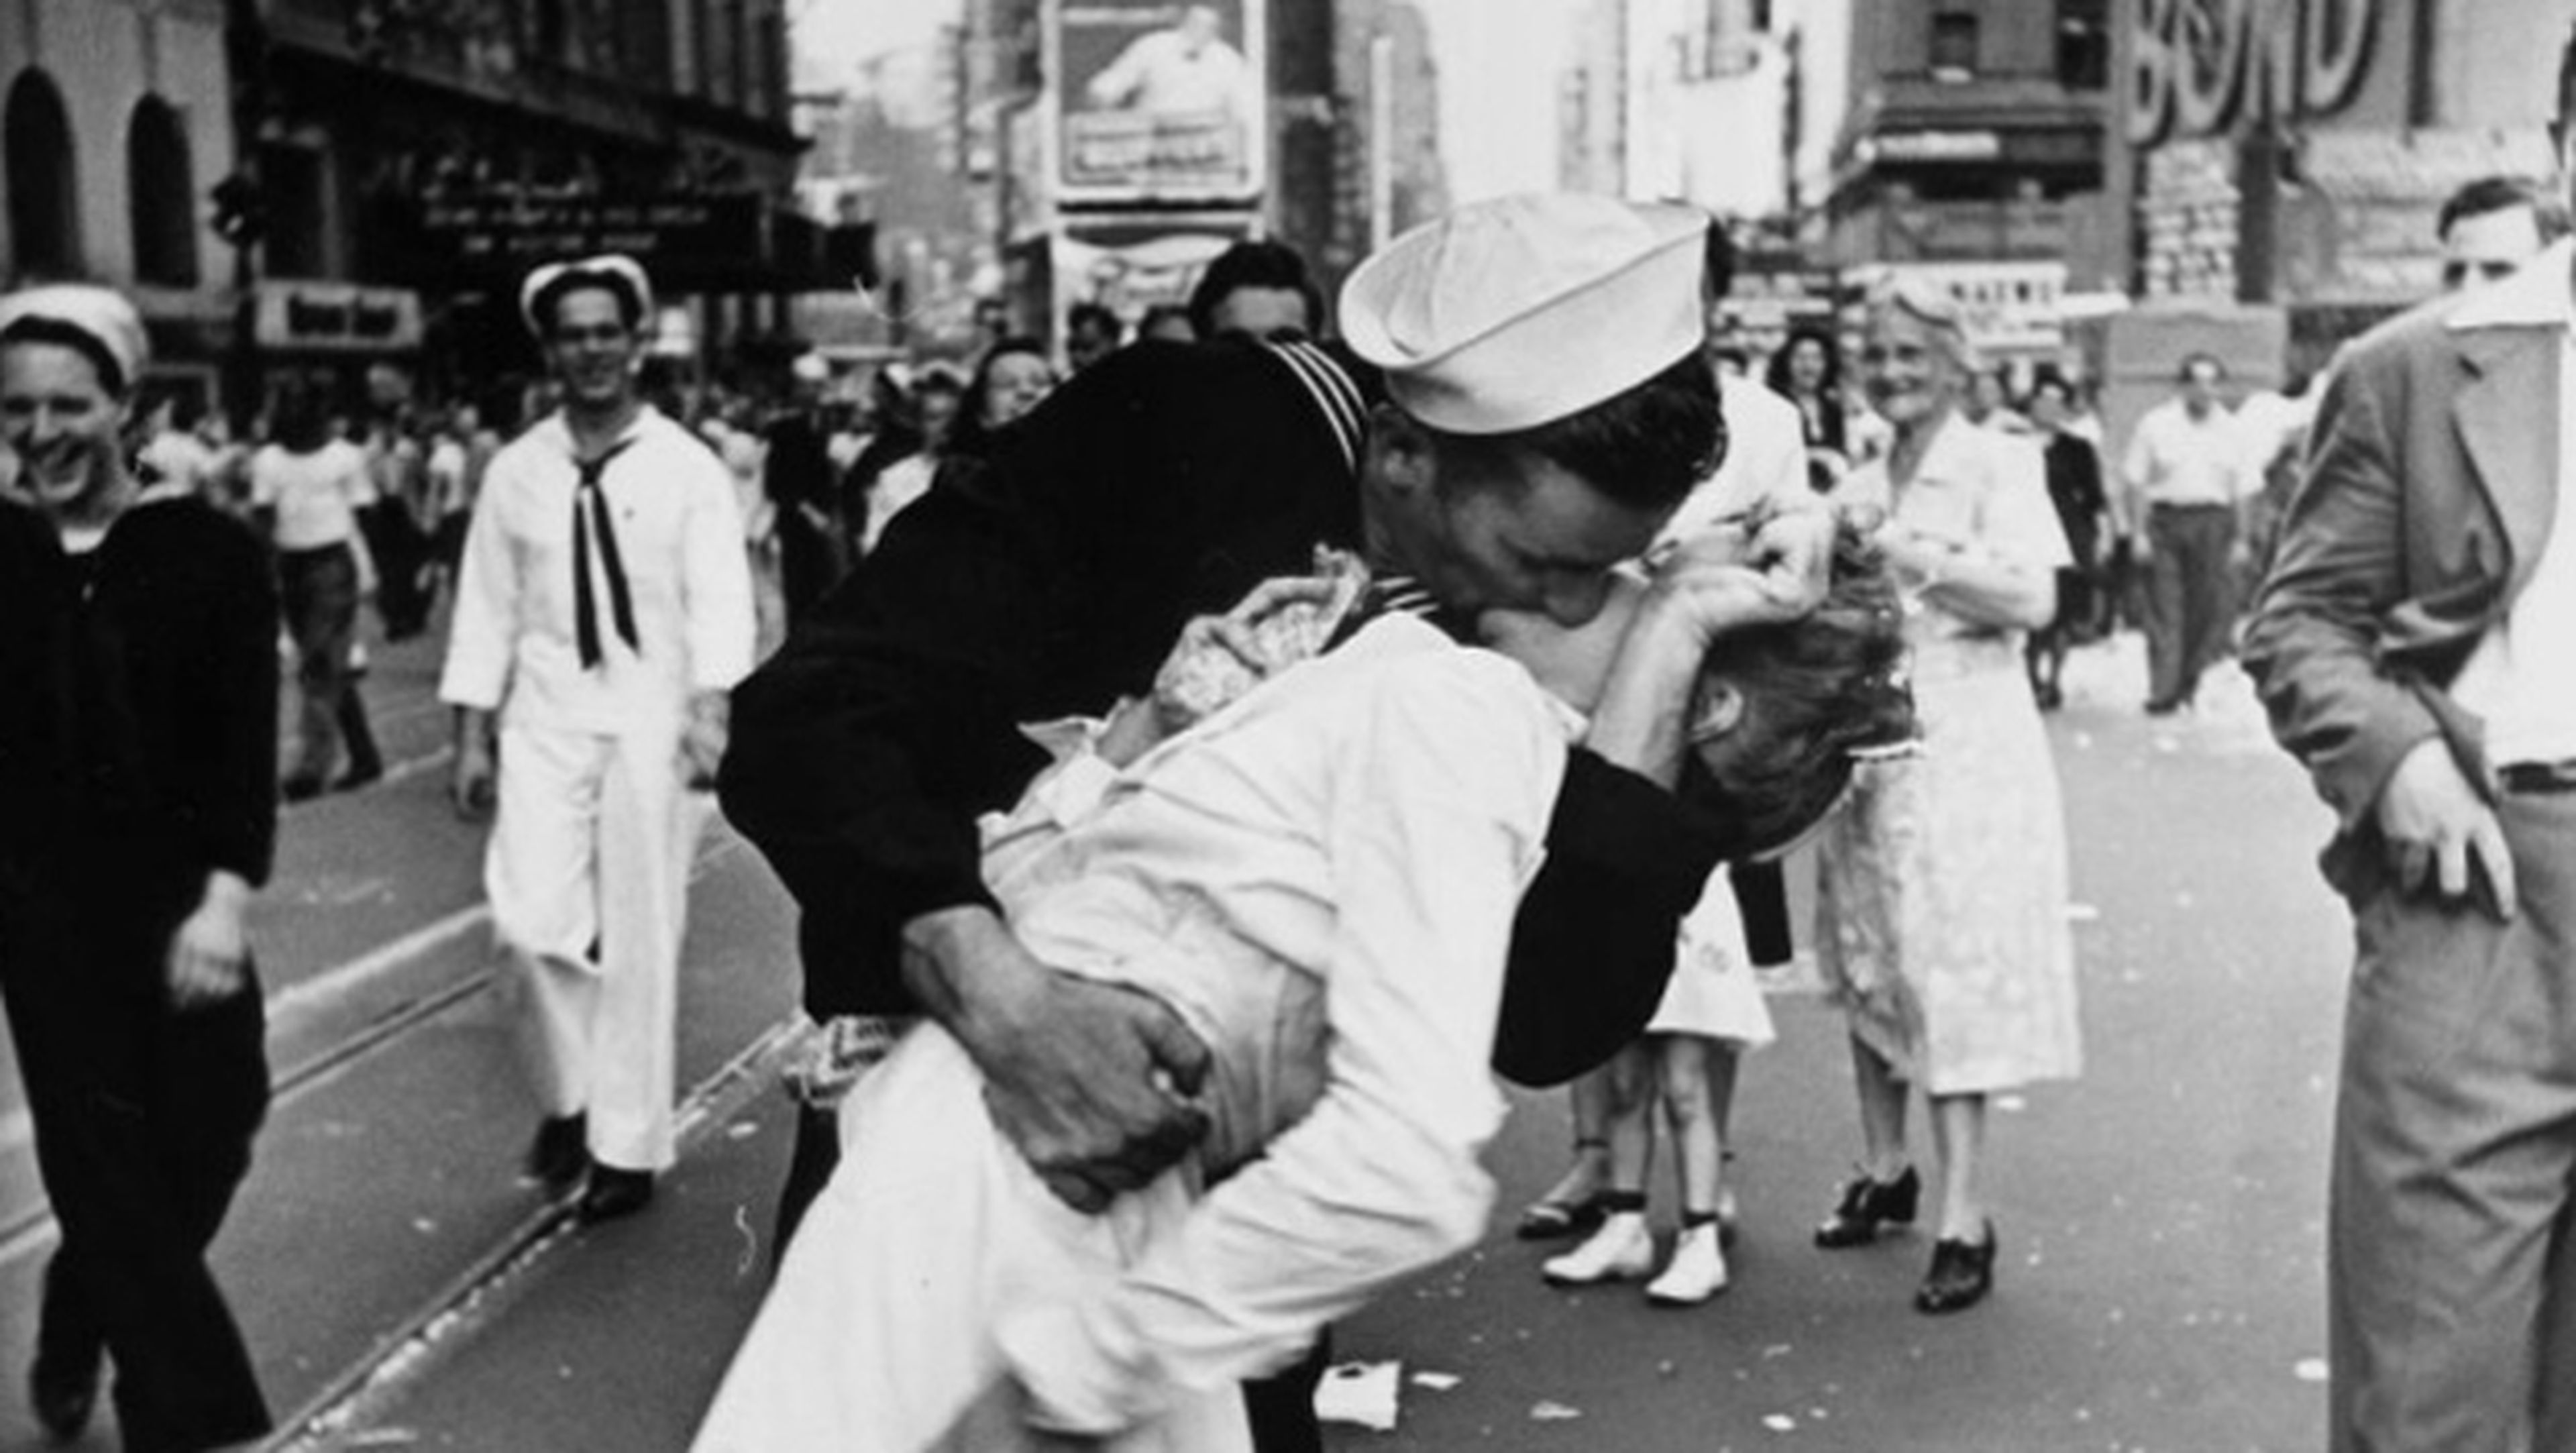 Fotografías célebres, El beso en Times Square de Eisenstaedt